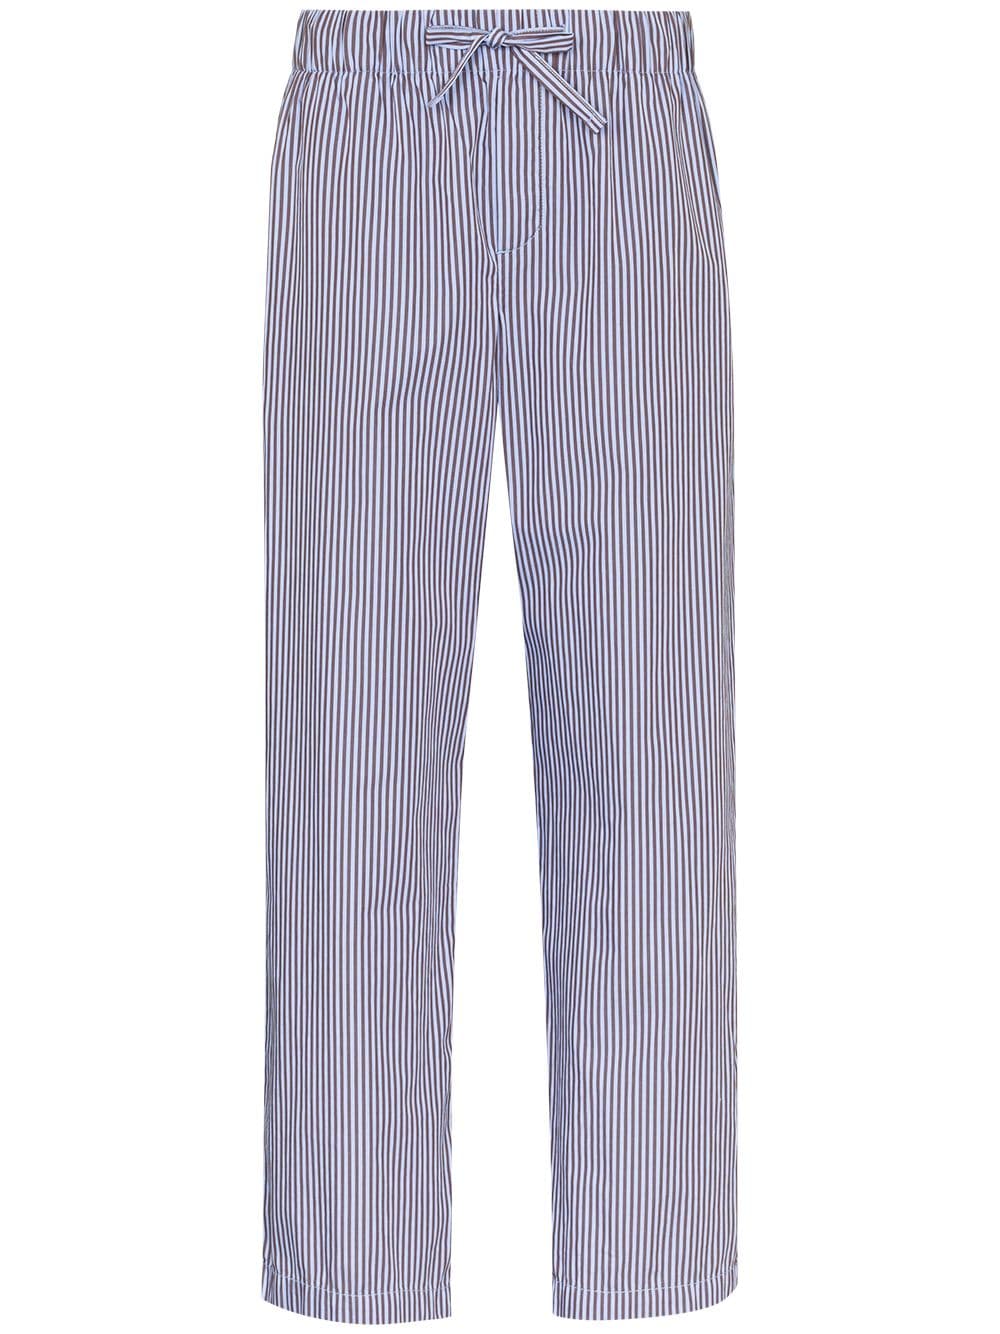 striped drawstring pajama trousers